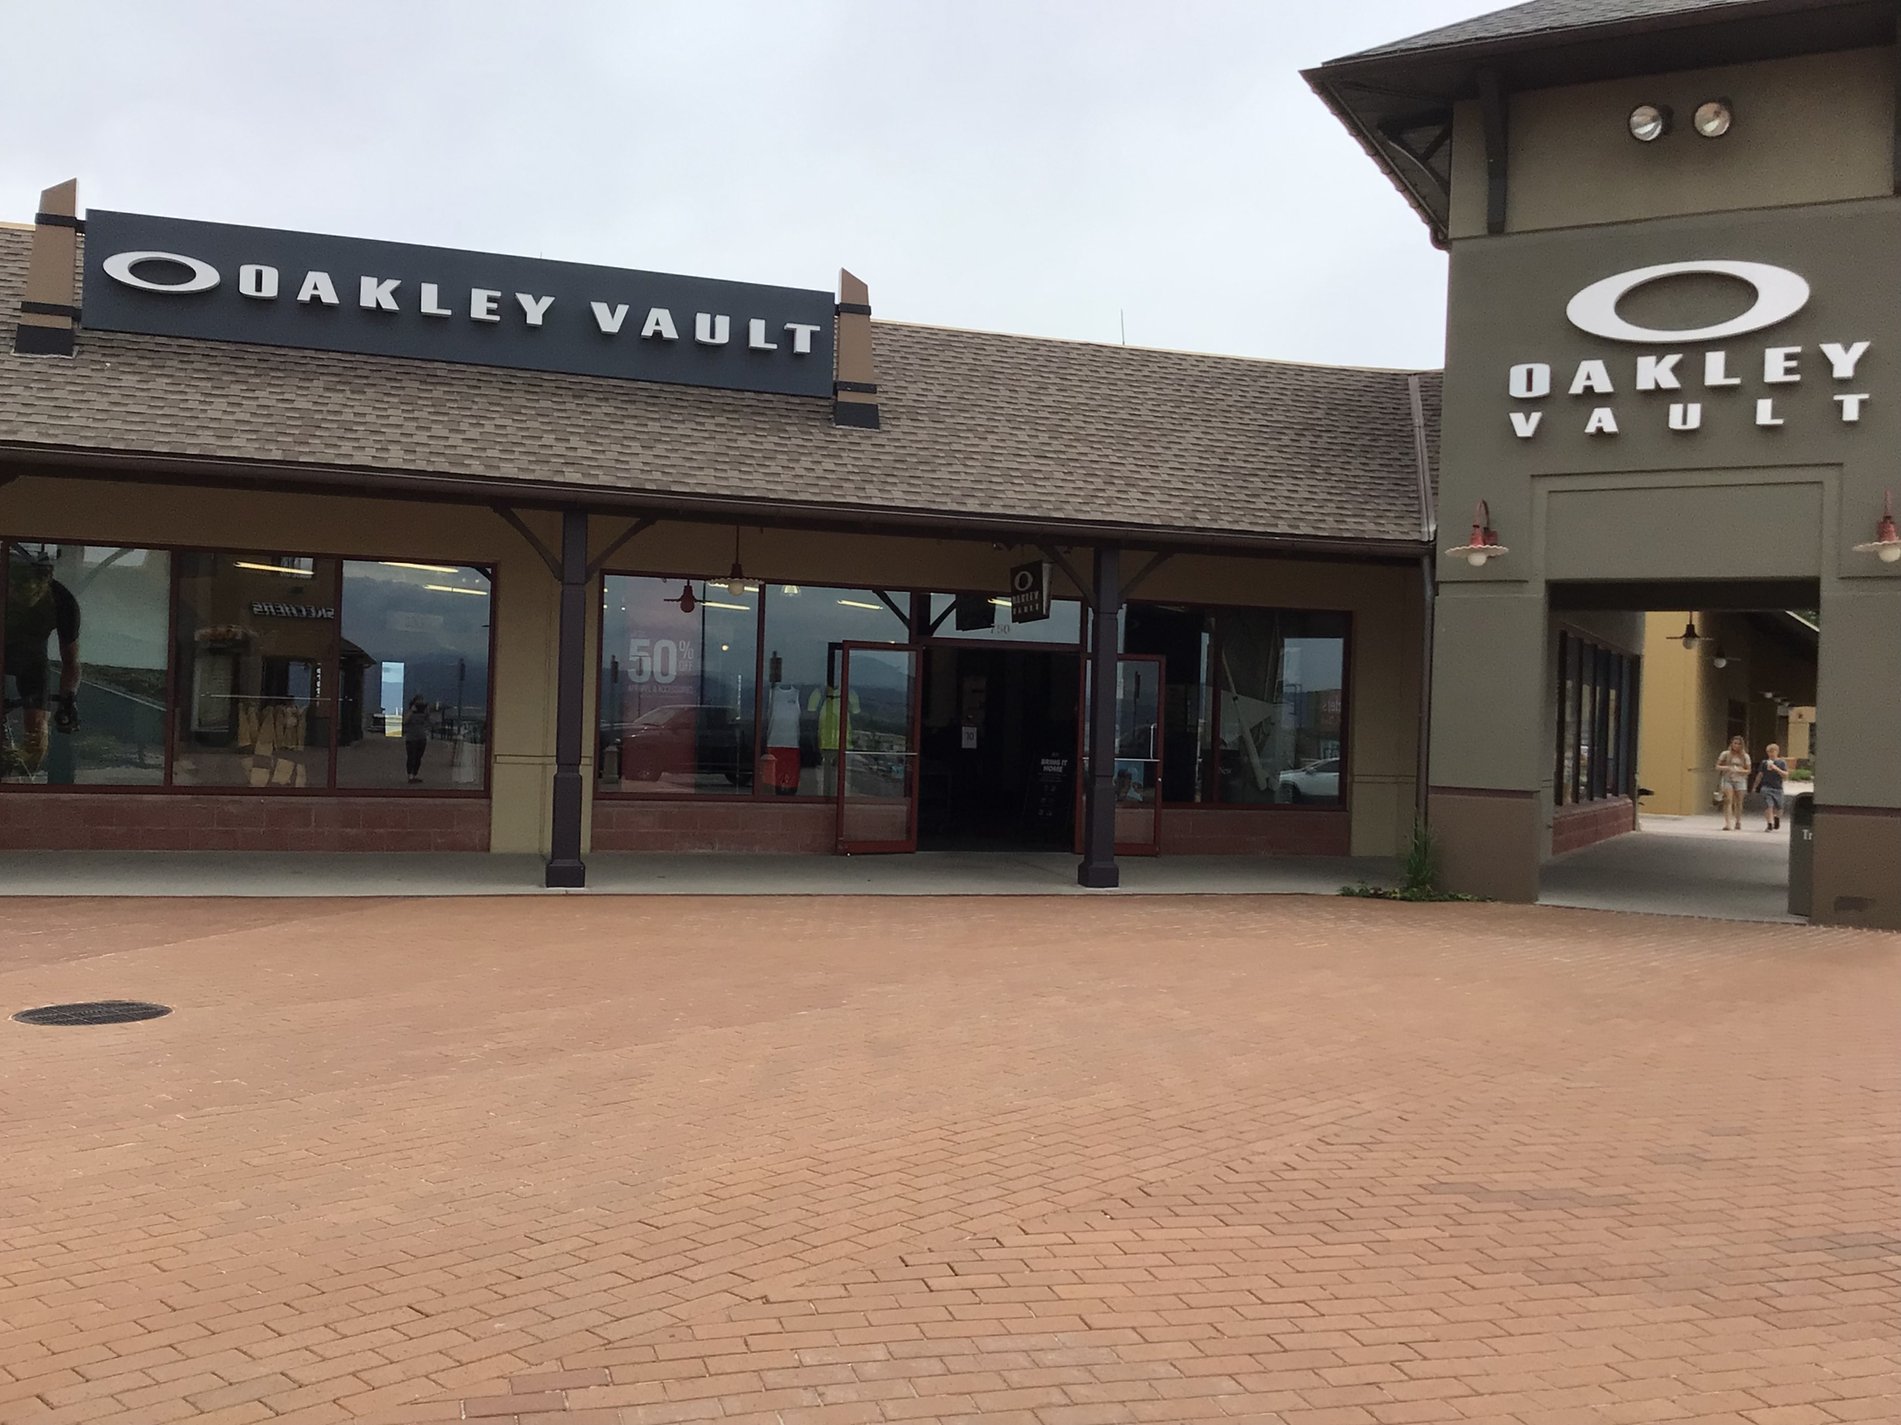 Oakley Vault, 5050 Factory Shops Blvd Castle Rock, CO